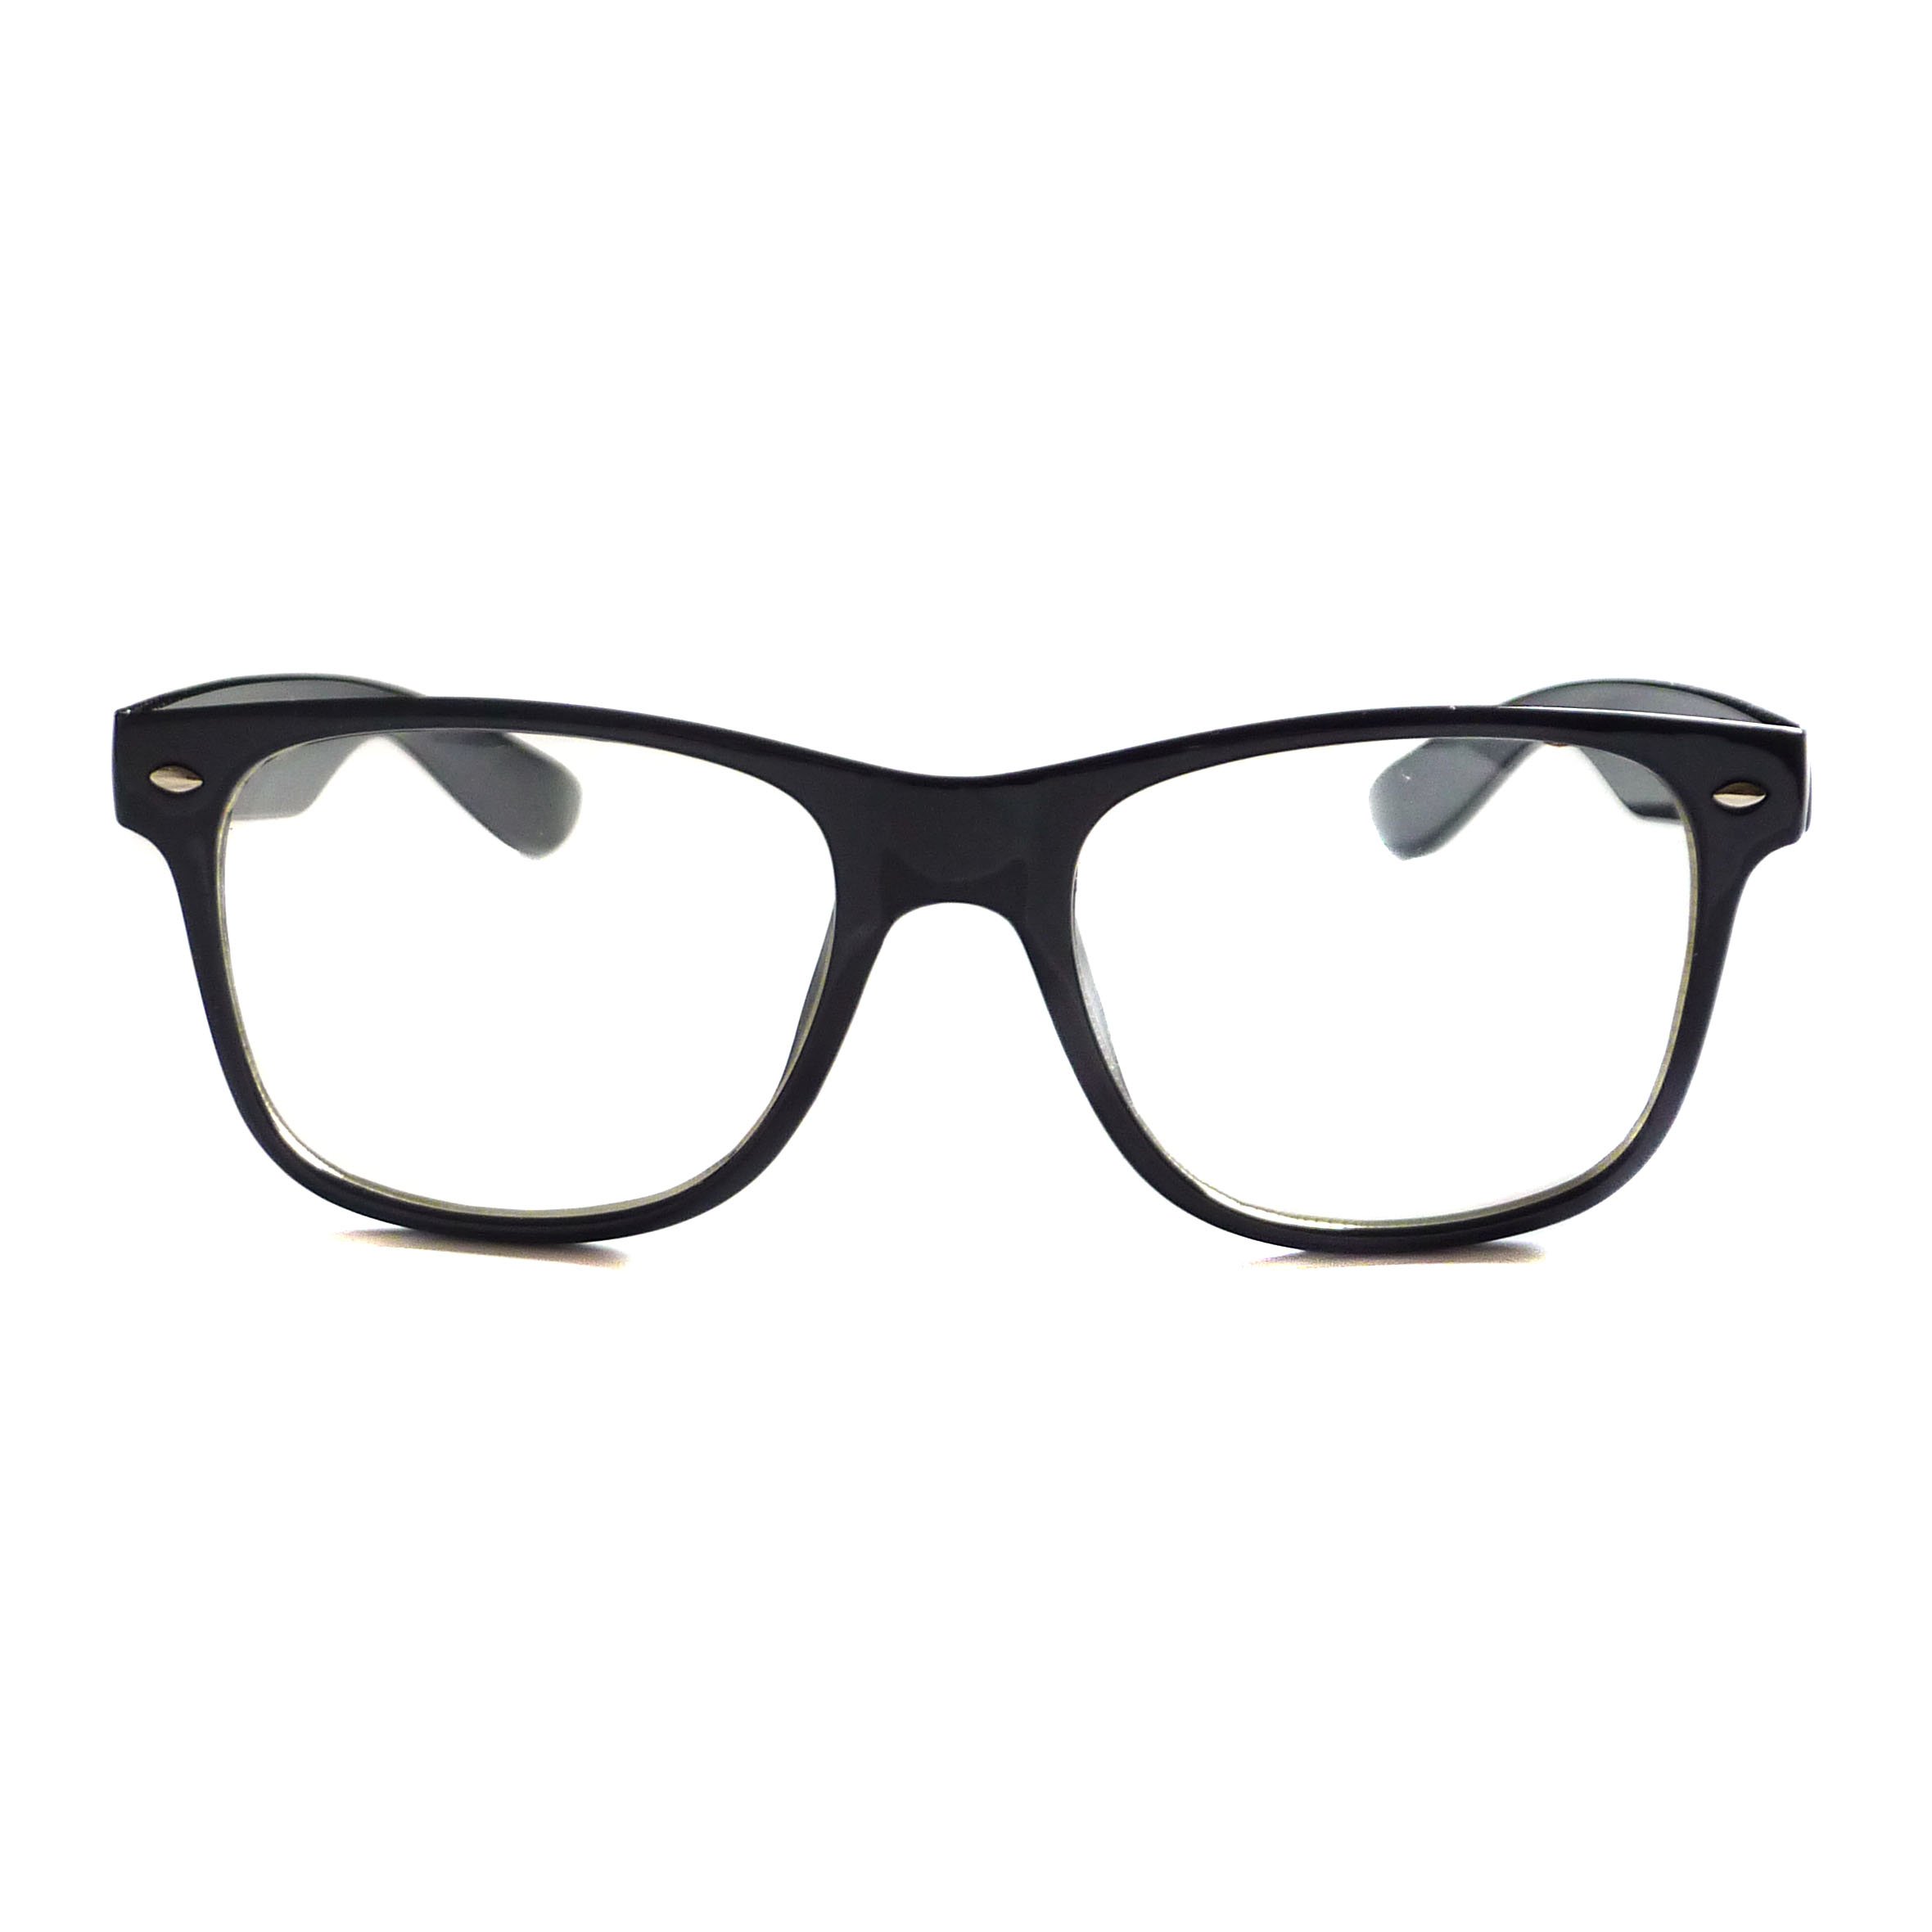 KIDS Childrens Nerd Retro Oversize Black Frame Clear Lens Eye Glasses (Age 3-10)